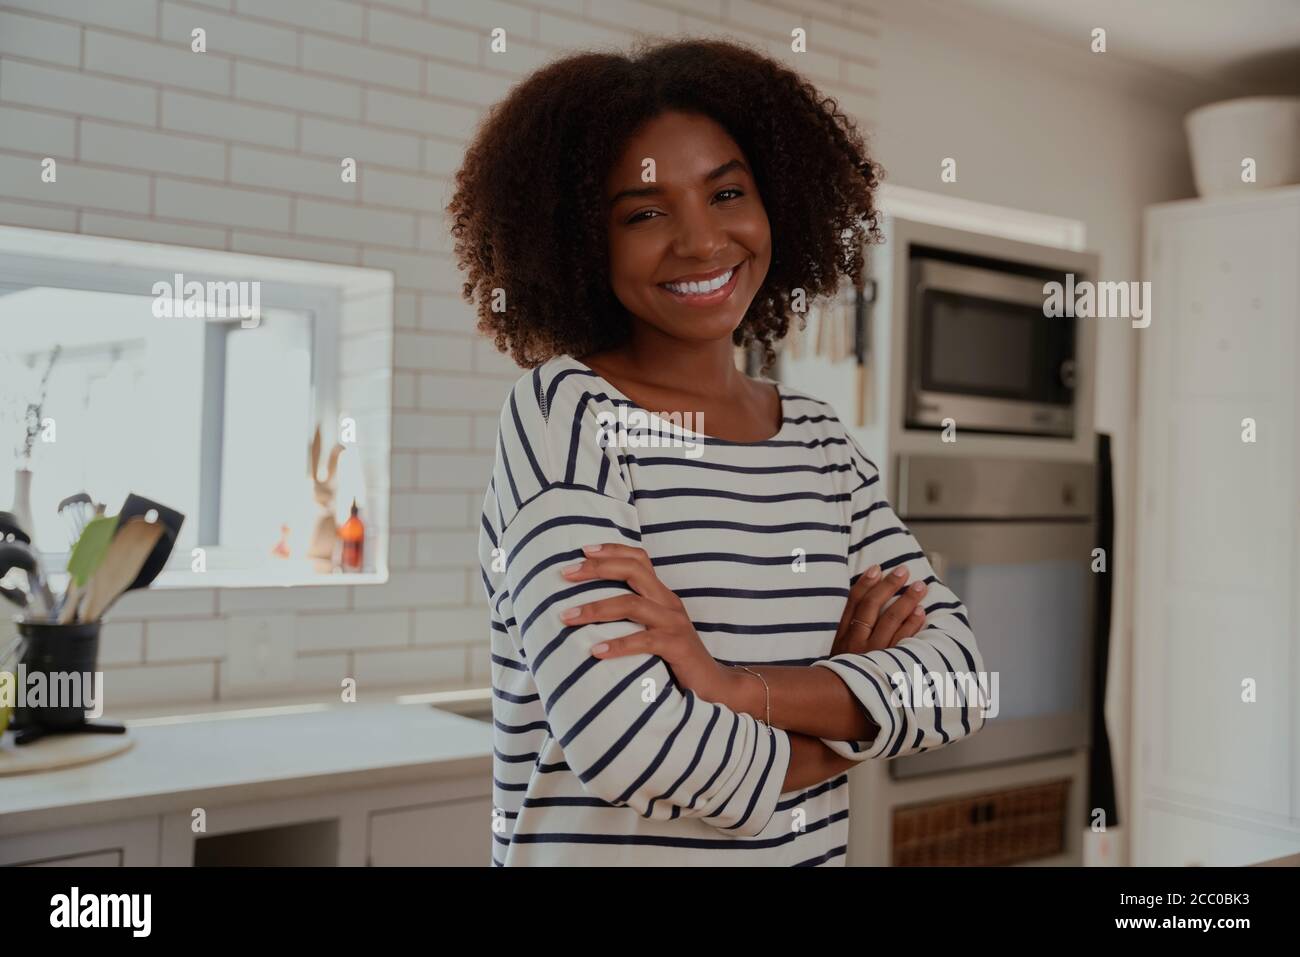 Ritratto di giovane donna africana allegra in piedi in cucina moderna con le braccia ripiegate che guardano la fotocamera Foto Stock